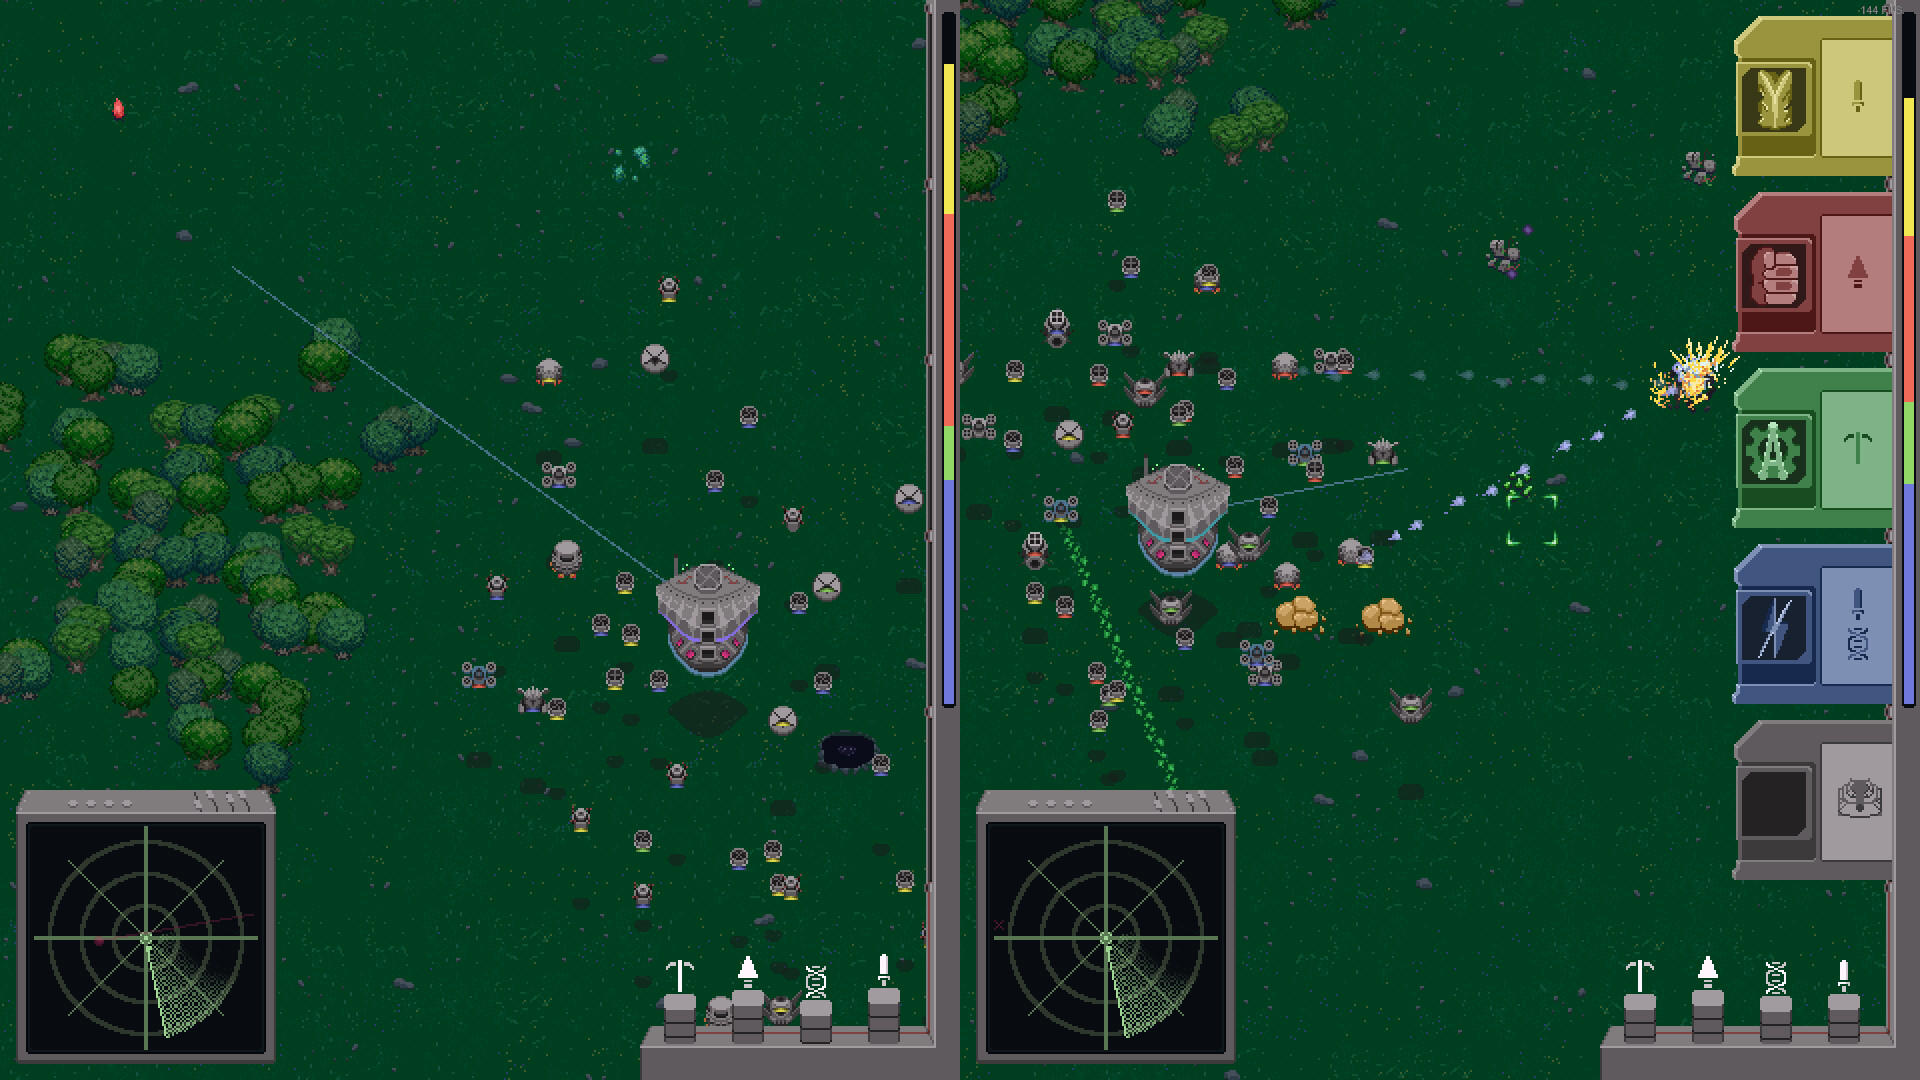 Roboden screenshot game